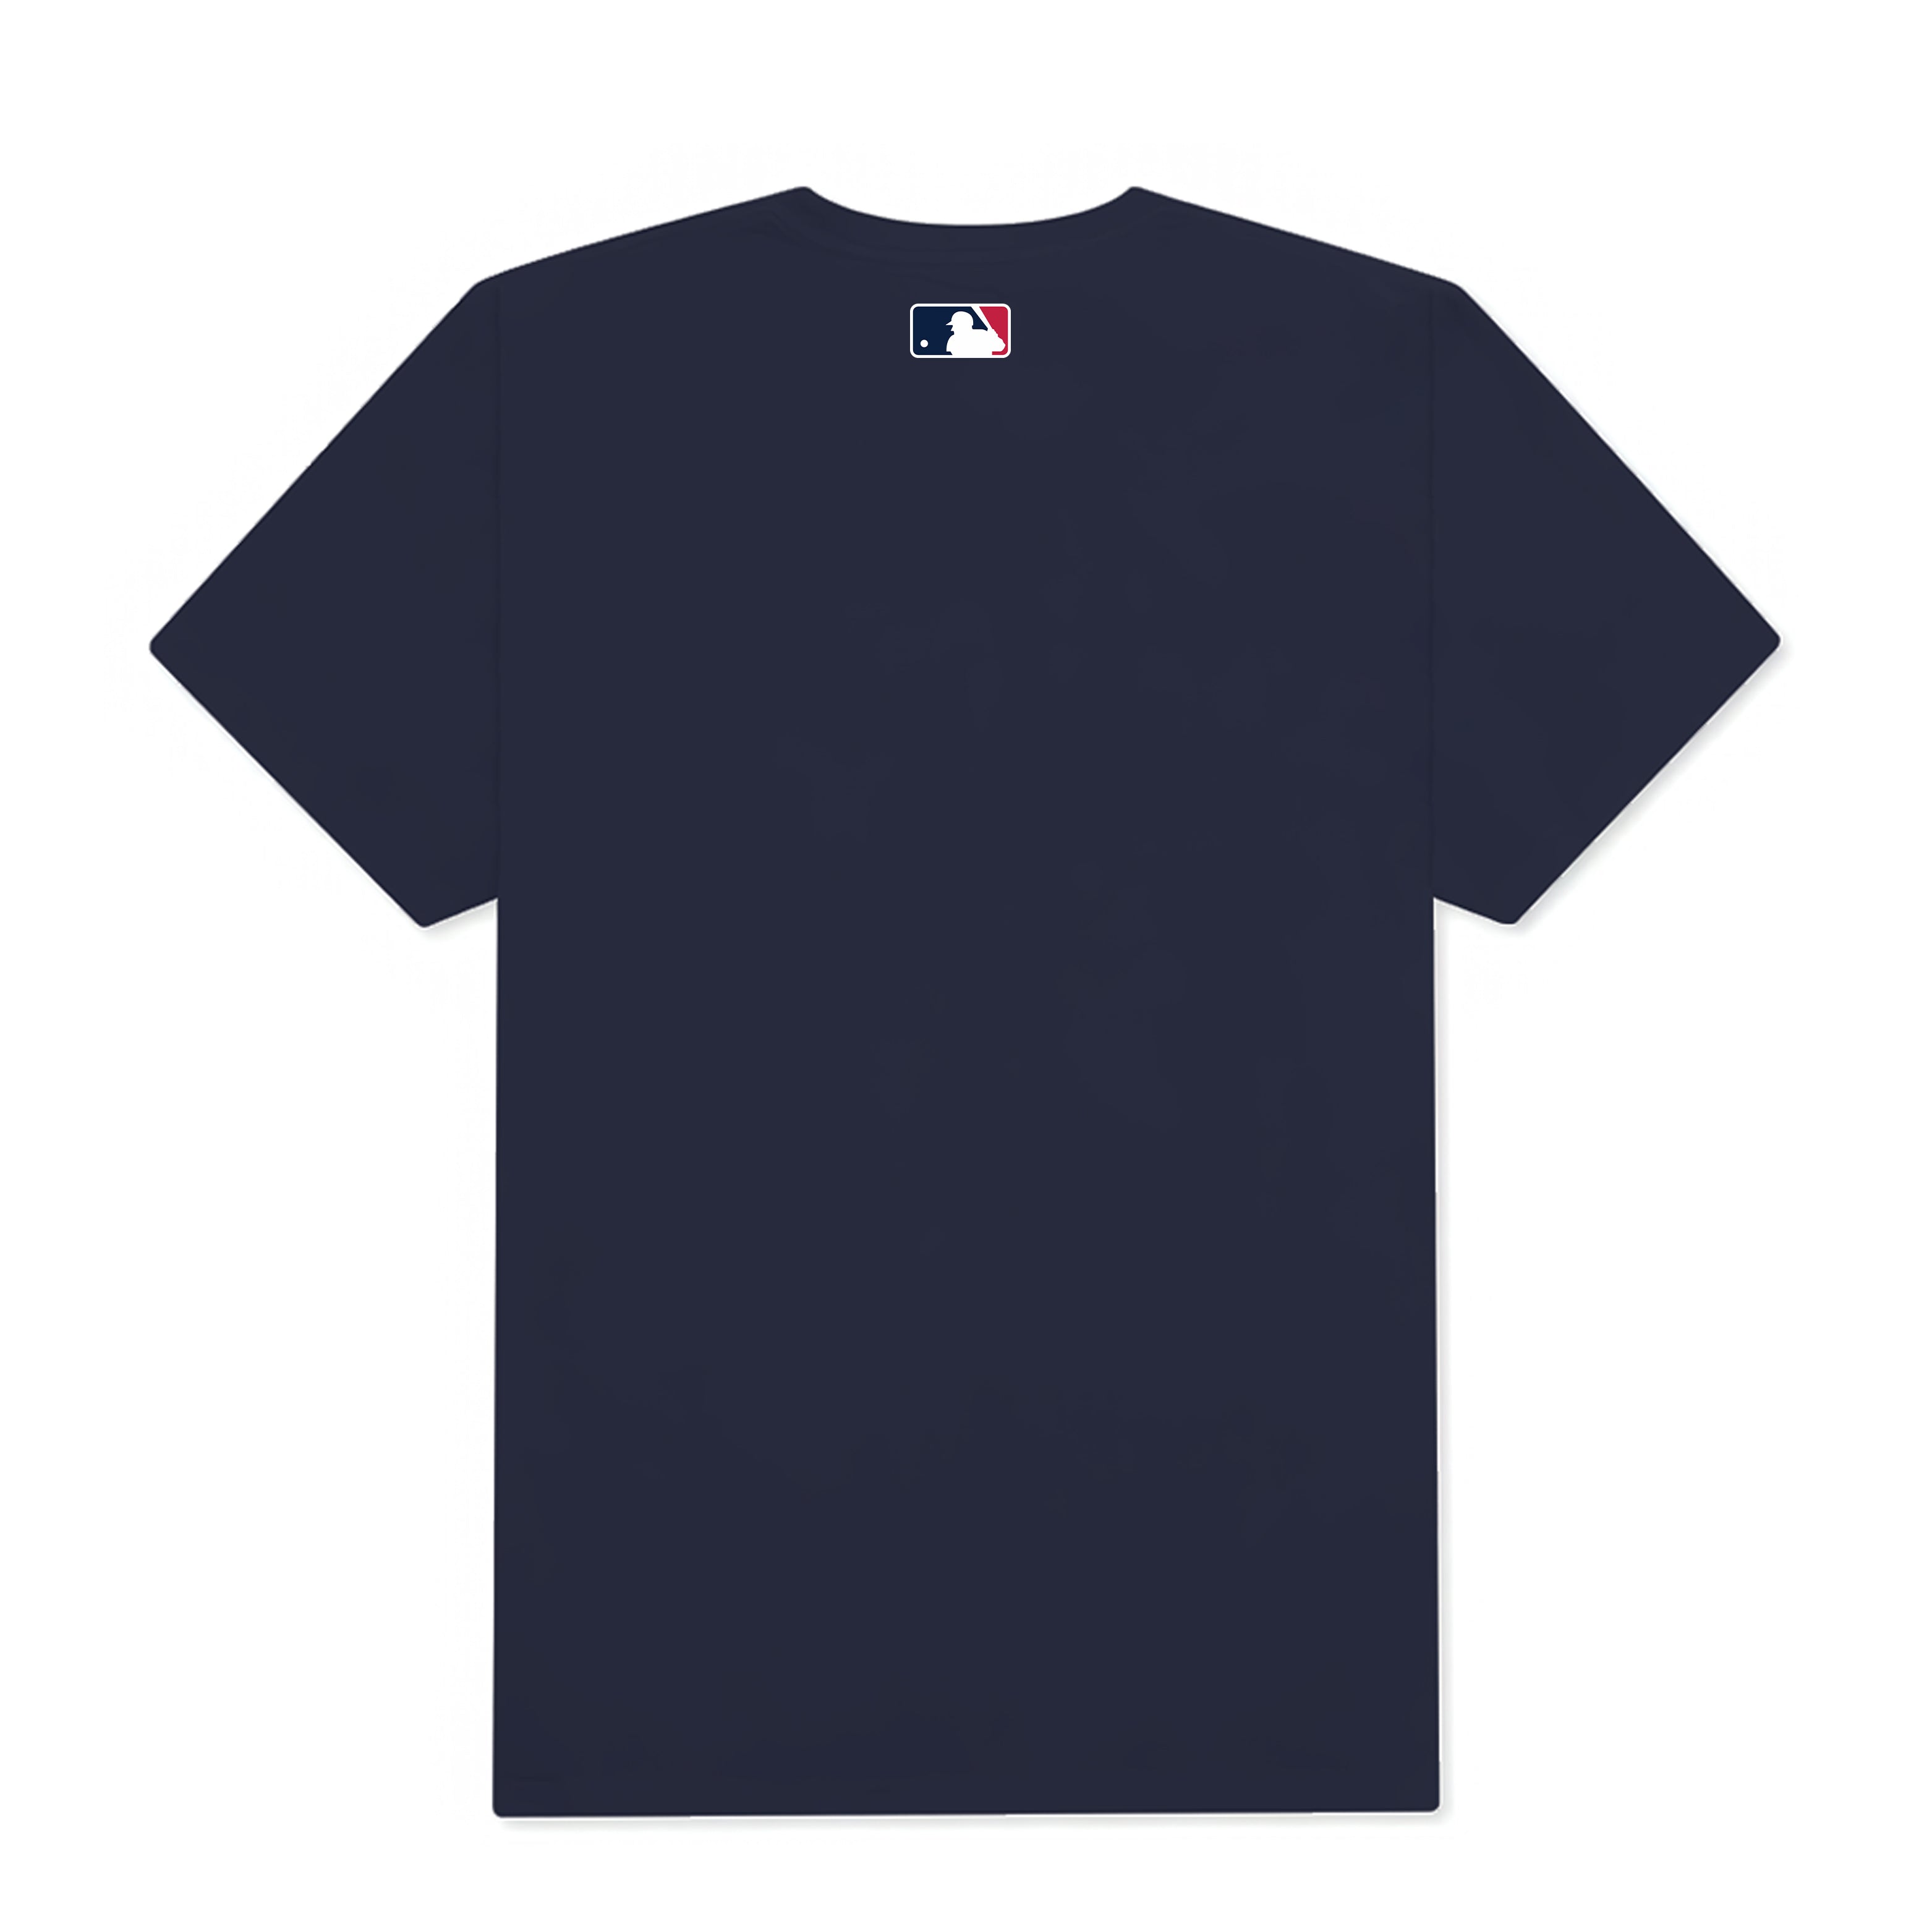 MLB New York Yankees Mickey T-Shirt